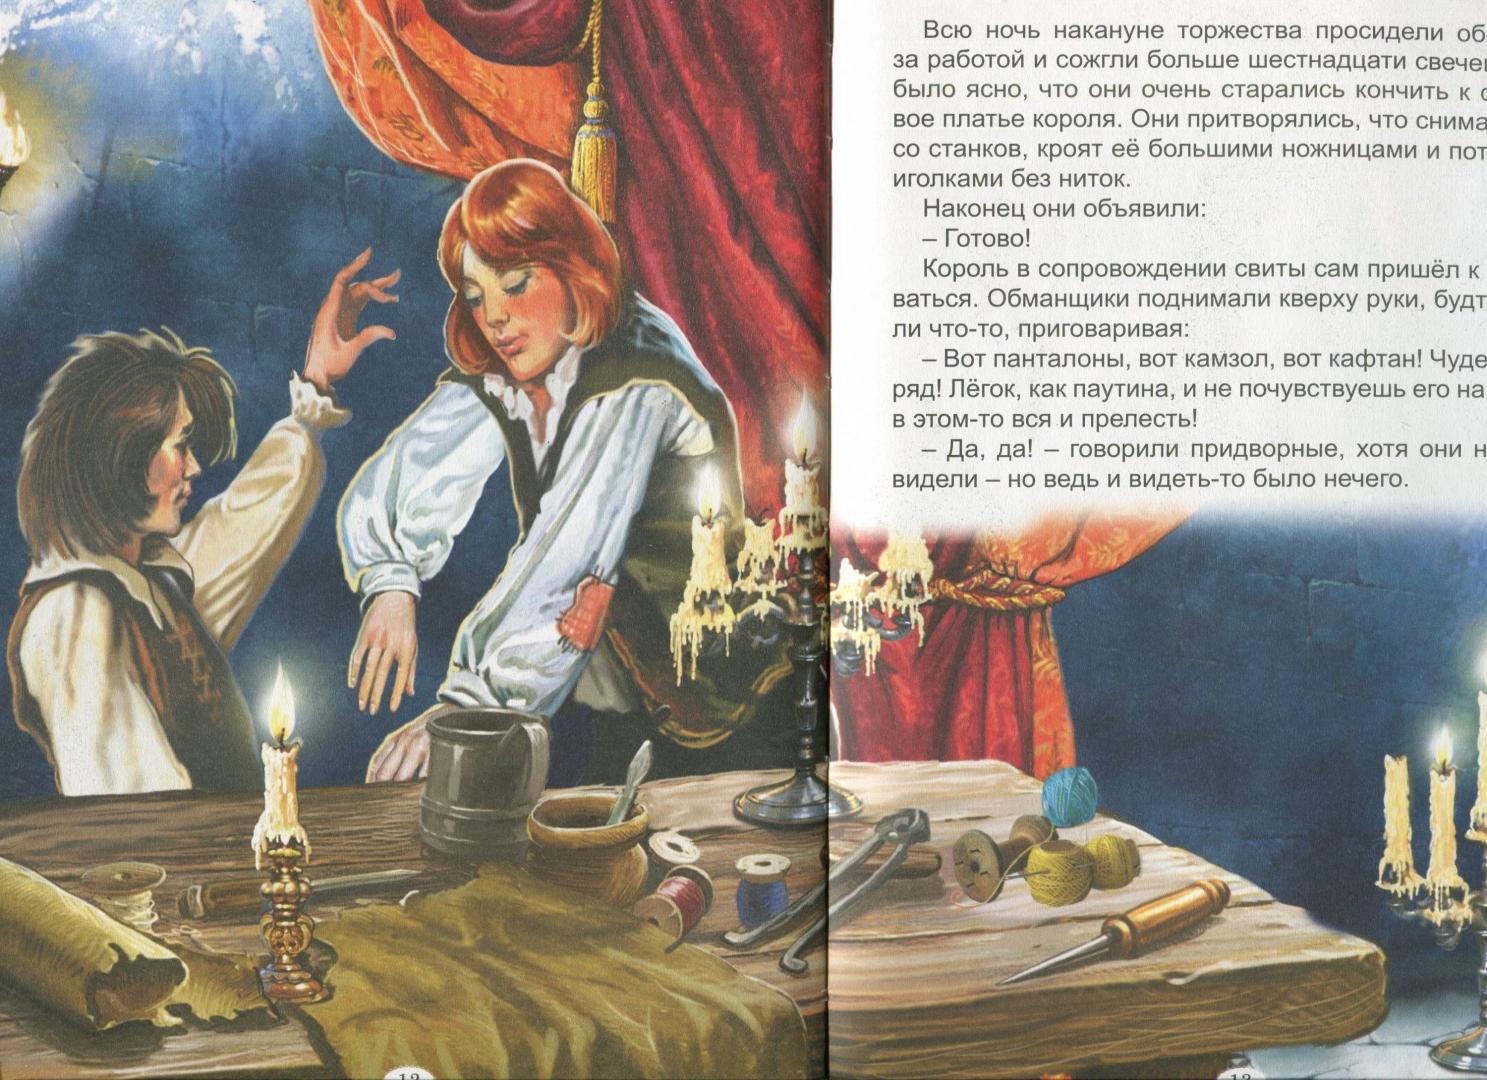 Иллюстрация 14 из 27 для Королевские сказки - Гримм, Андерсен, Лабулэ | Лабиринт - книги. Источник: Лабиринт